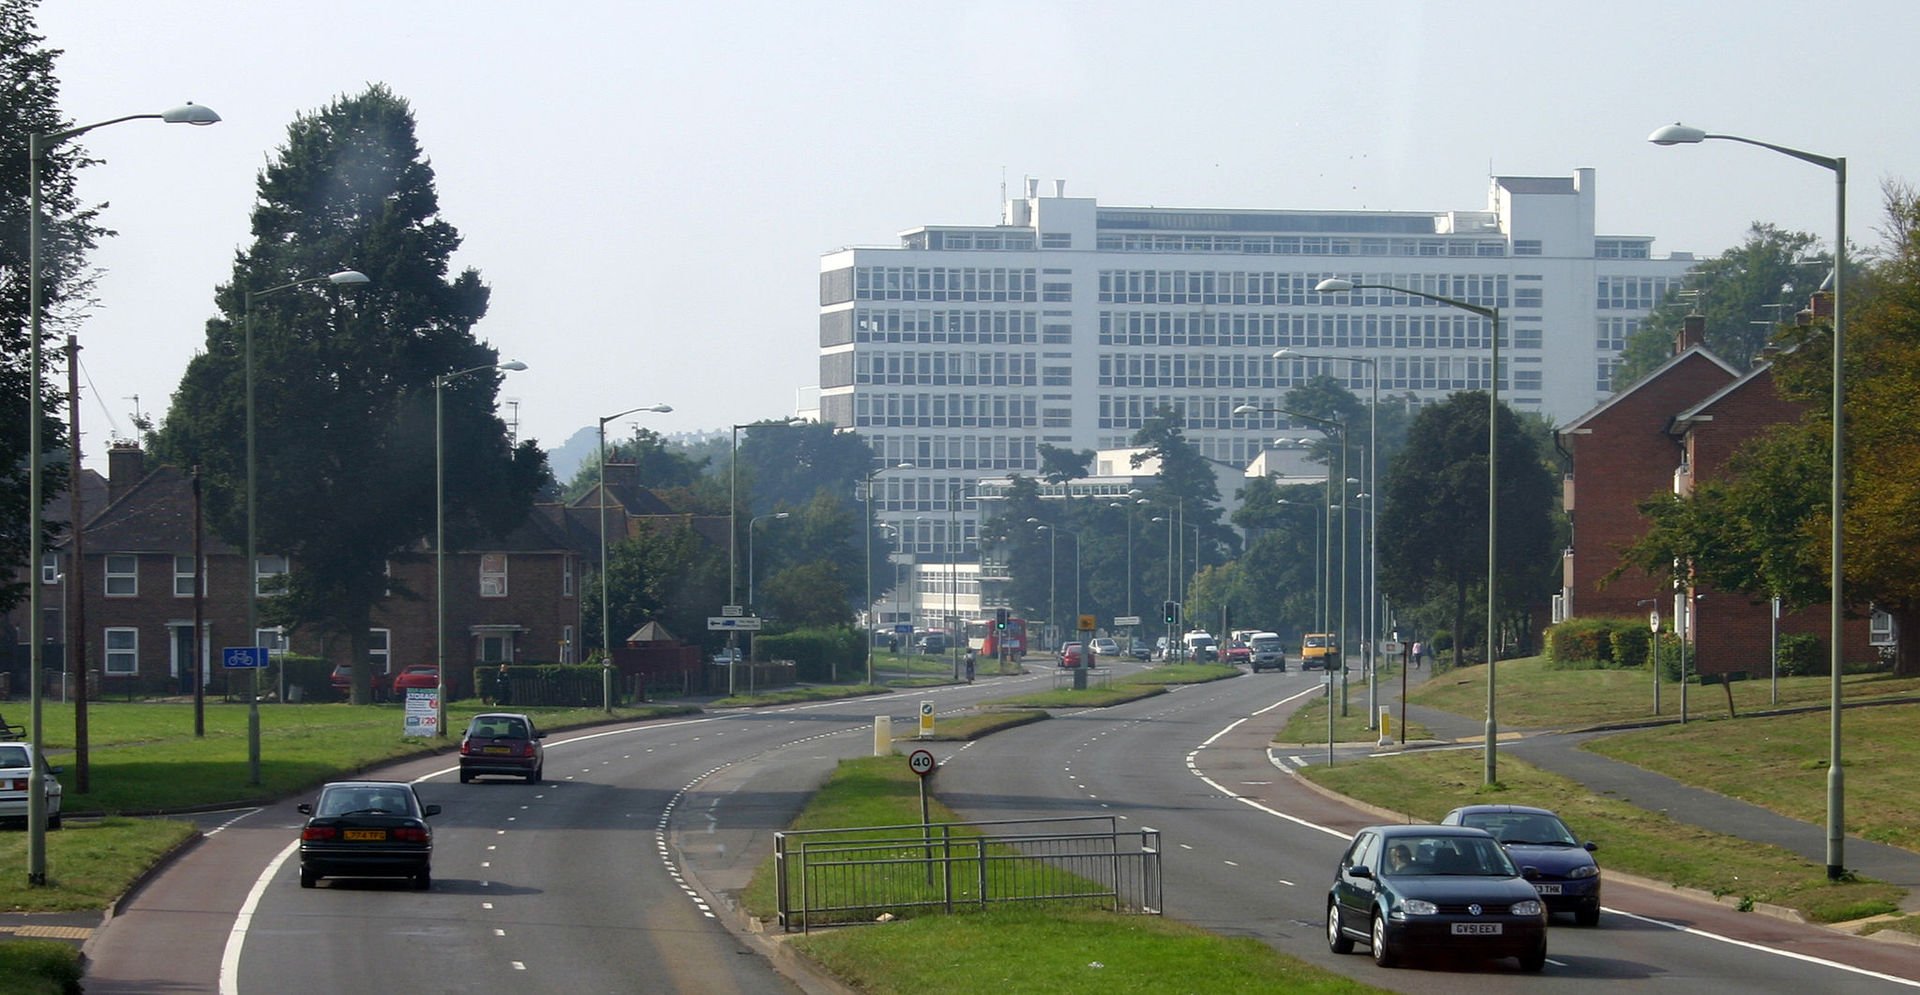 University of Brighton - Cockcroft building